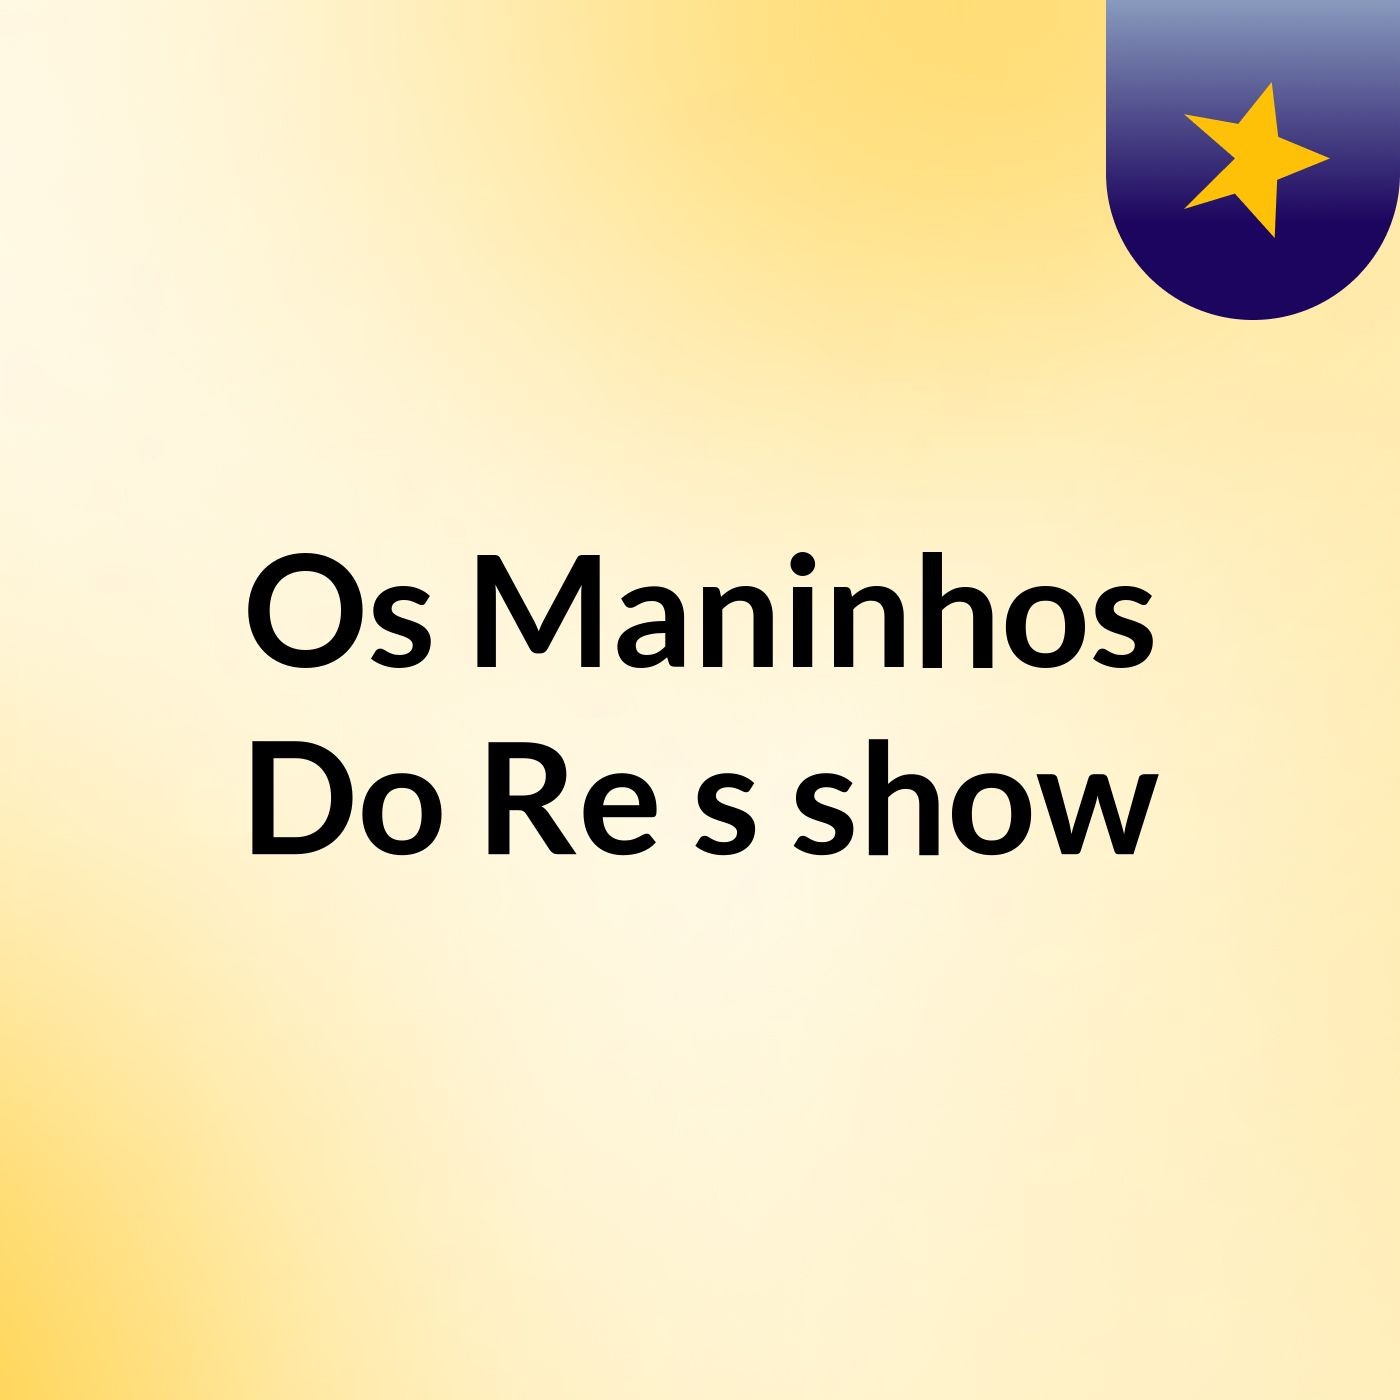 Os Maninhos Do Re's show